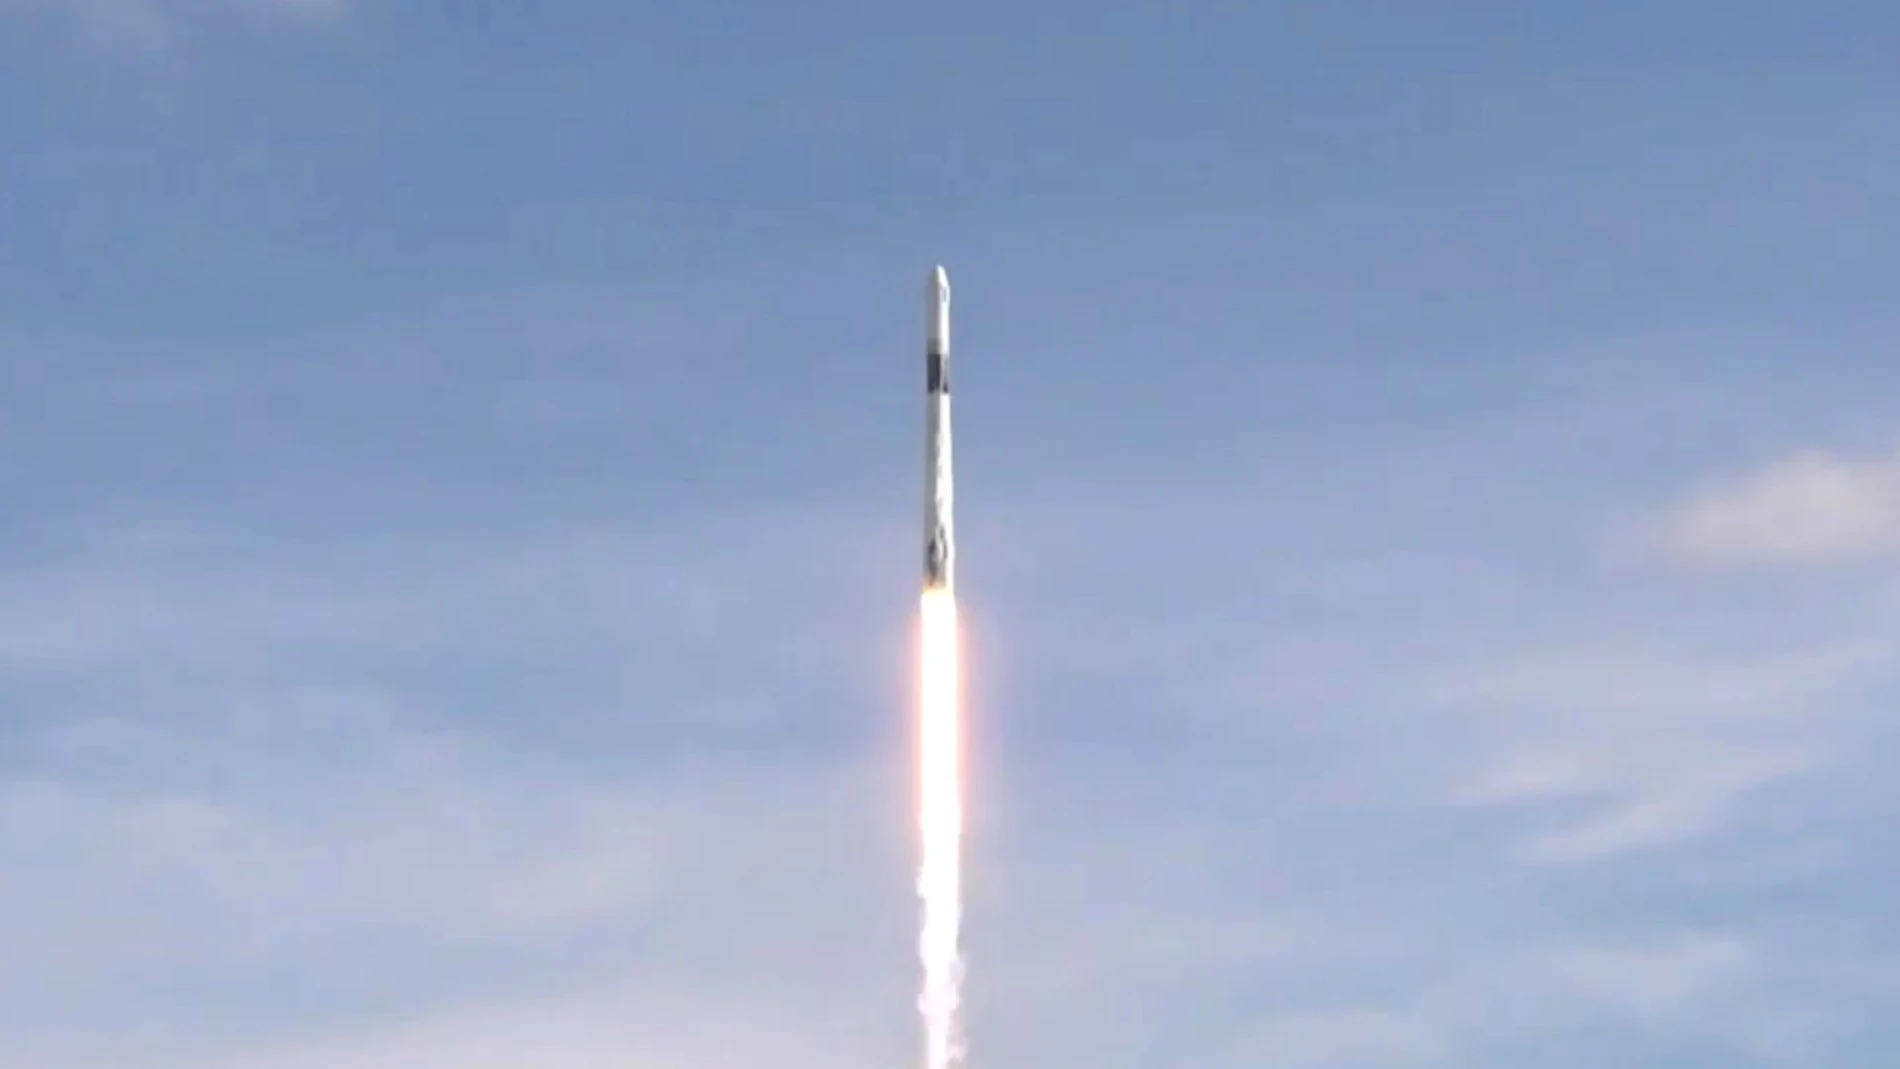 SpaceX envía la cápsula Dragon con suministros a la Estación Espacial